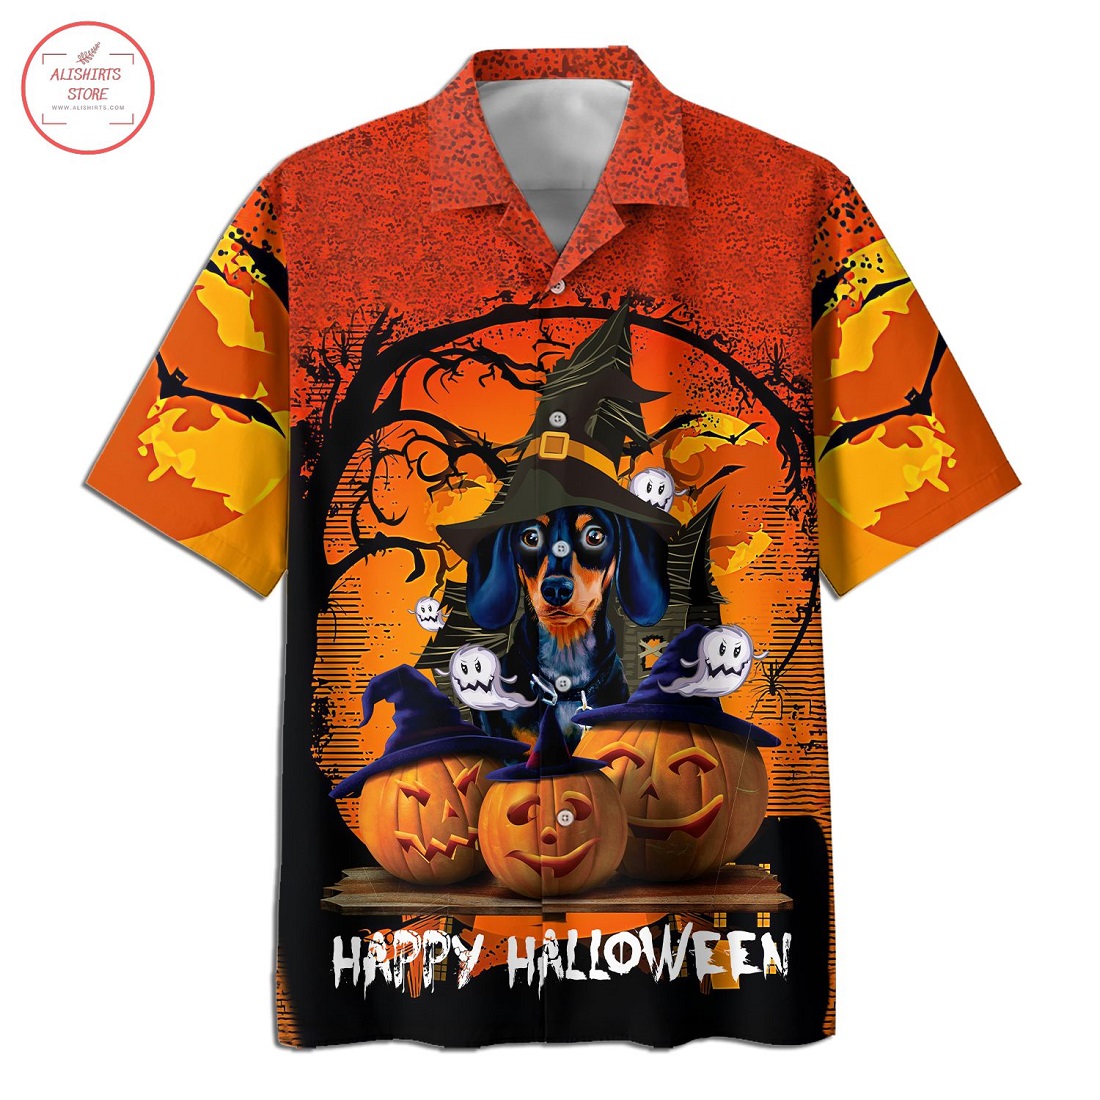 Dog and pumpkin Halloween Hawaiian Shirt